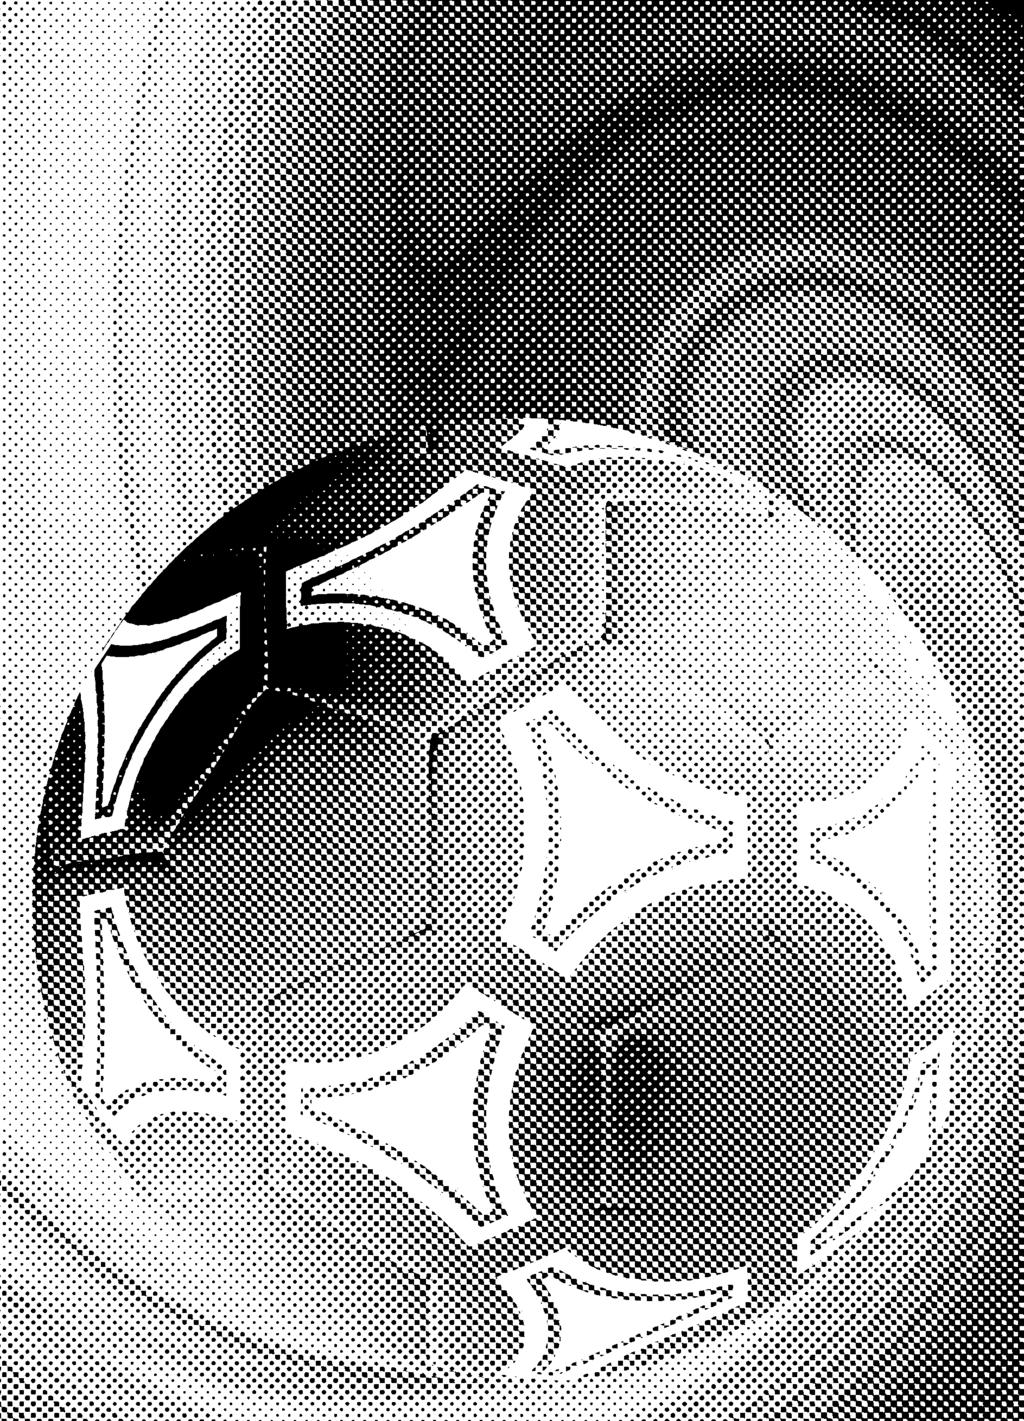 AUSTRIA LIVE Seite 18 Noch ohne Derby-Sieg FK Austria Wien SK Rapid Wien 31. wiener derby Die Veilchen wollen heute gegen Grün-Weiß auch im vierten Kräftemessen der Saison ungeschlagen bleiben.